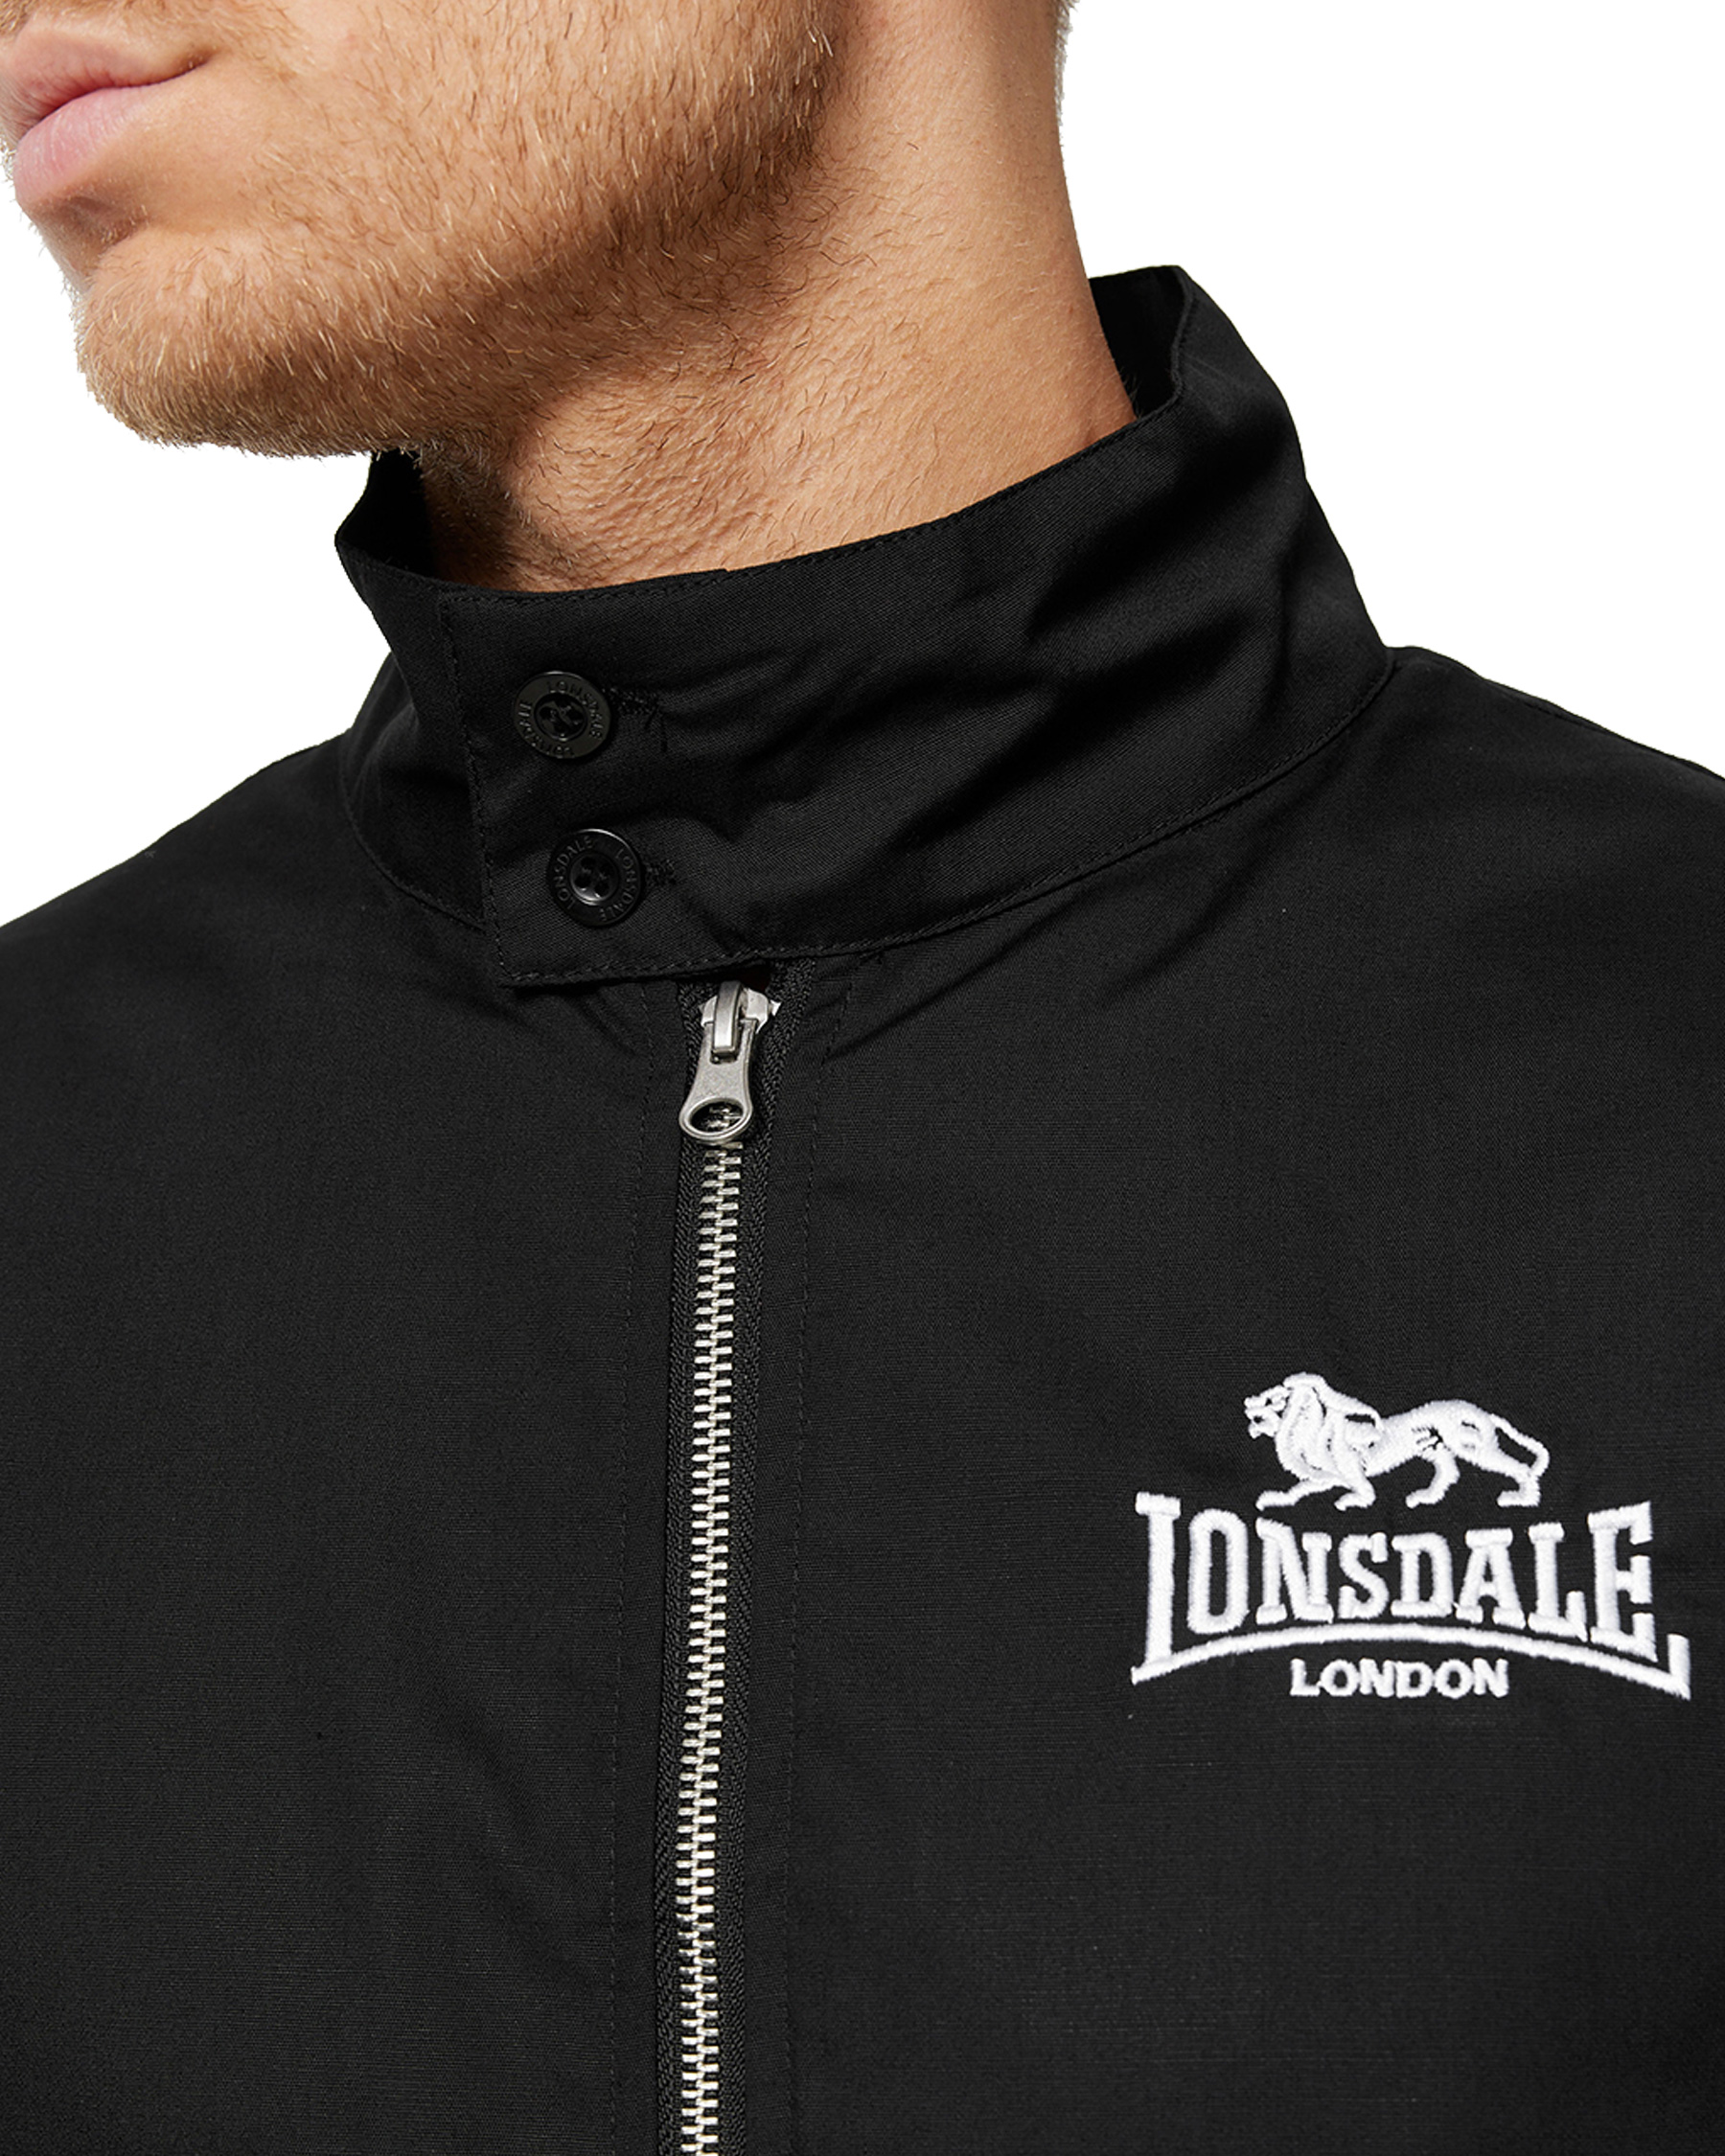 Lonsdale Jacket Jackets - London - Mens Acton Lonsdale Harrington